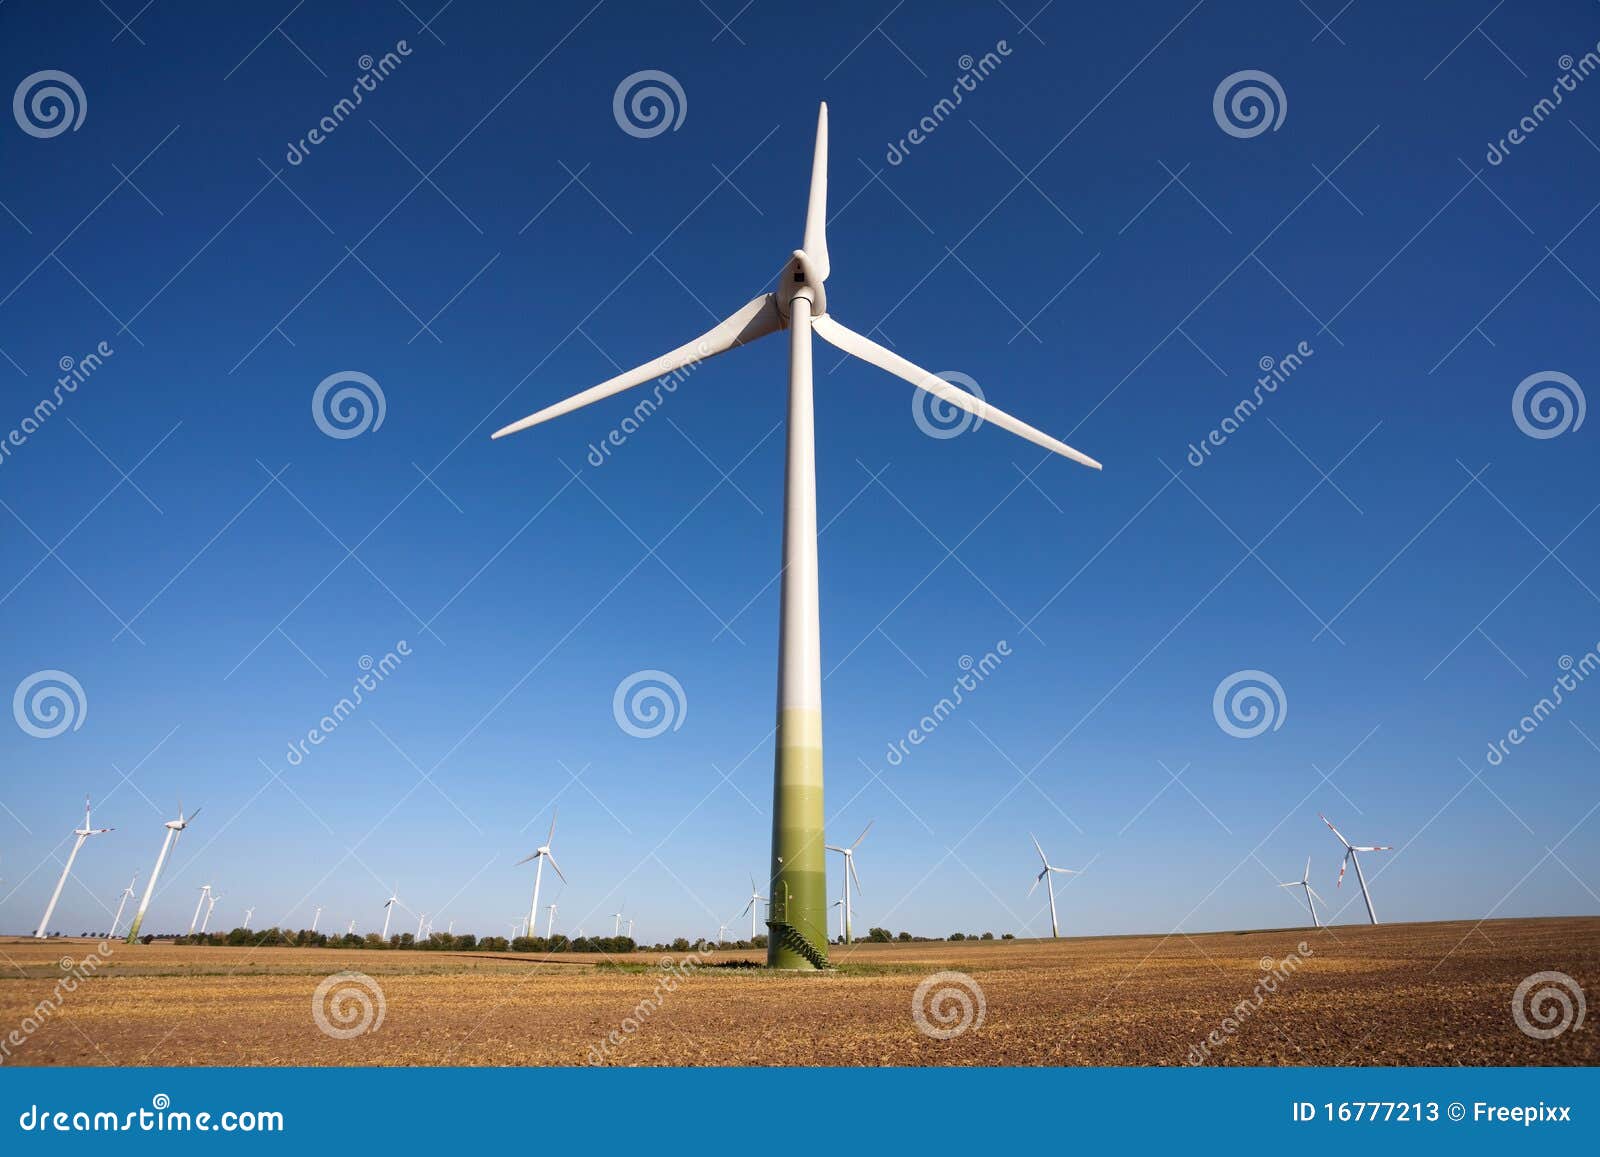 windpower green technology